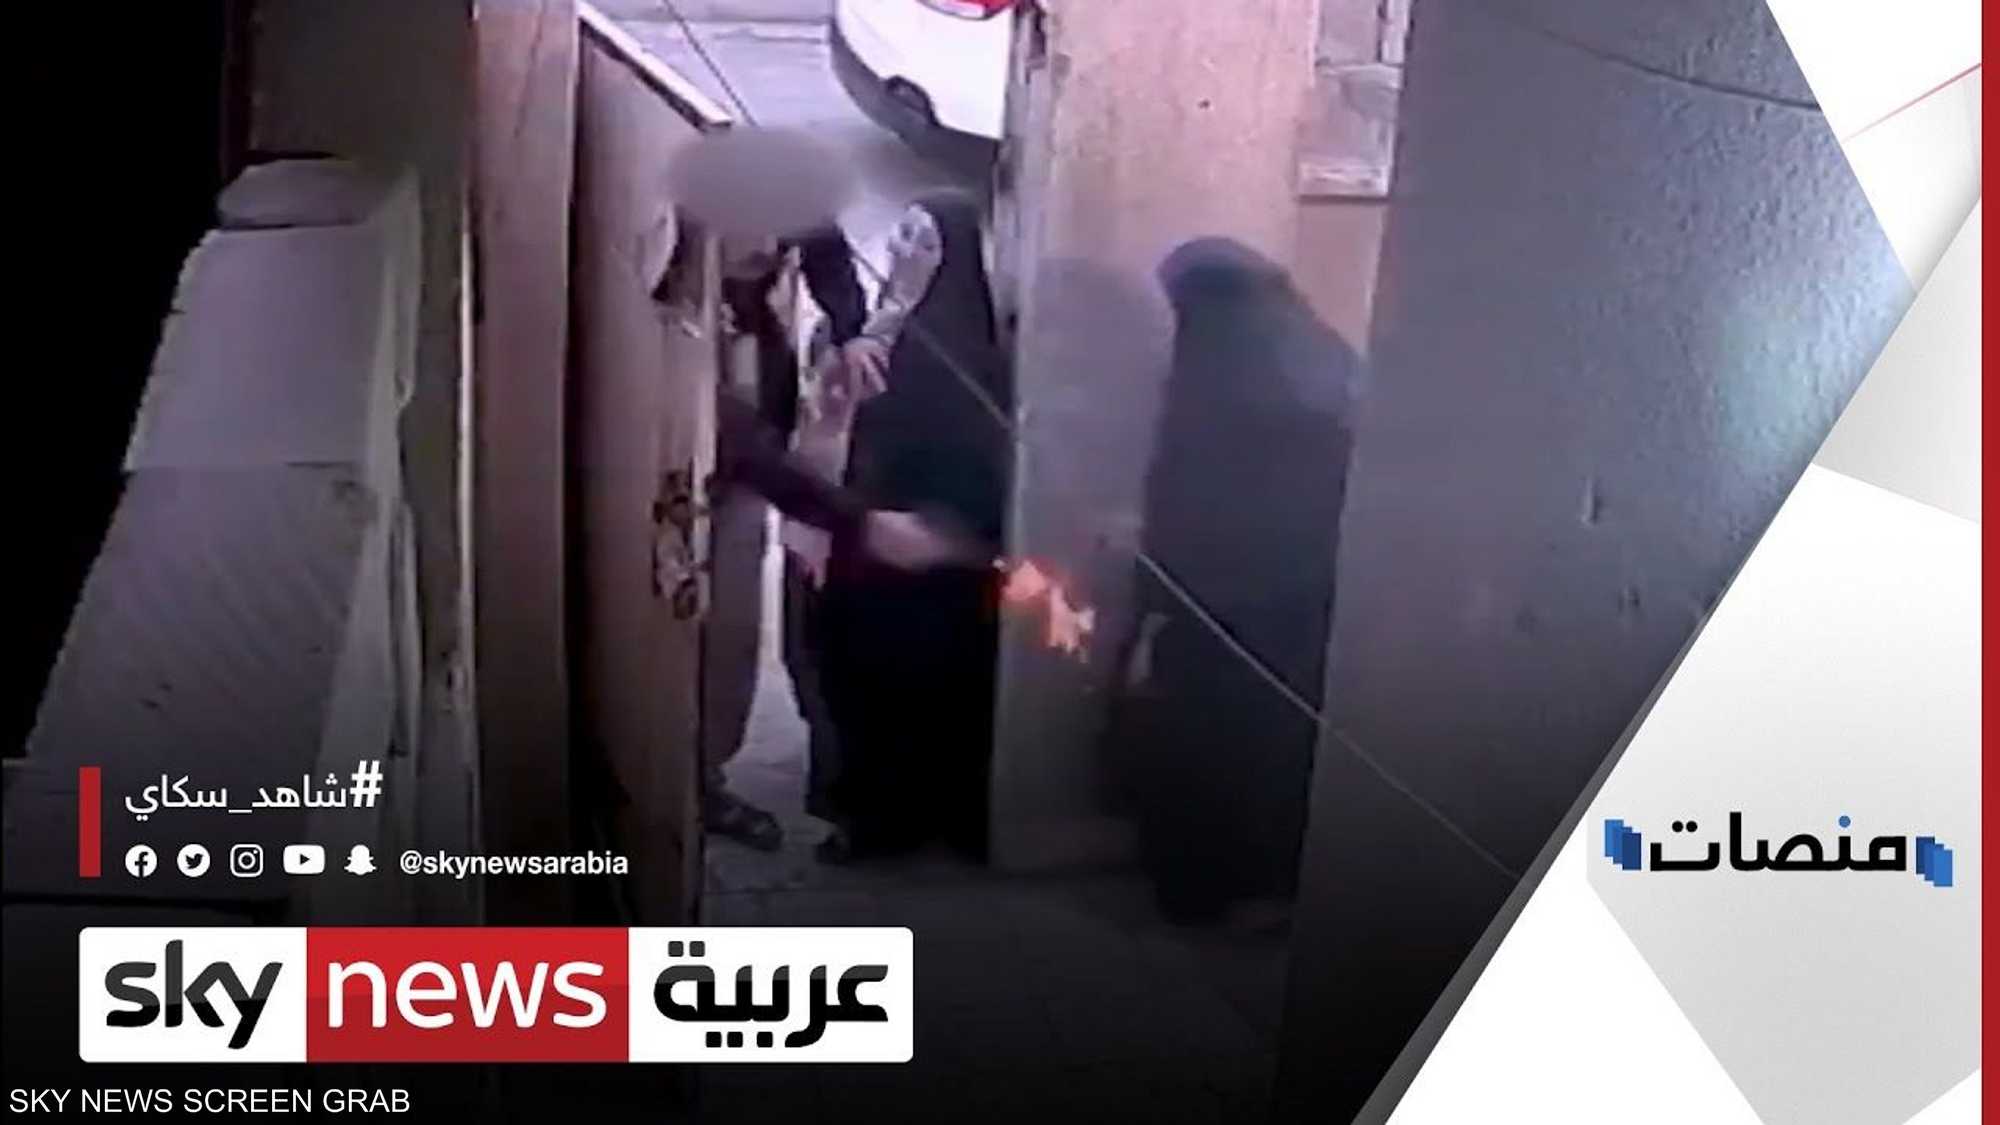 فيديو عراقي يطلق النار على طليقته يشعل موجة غضب